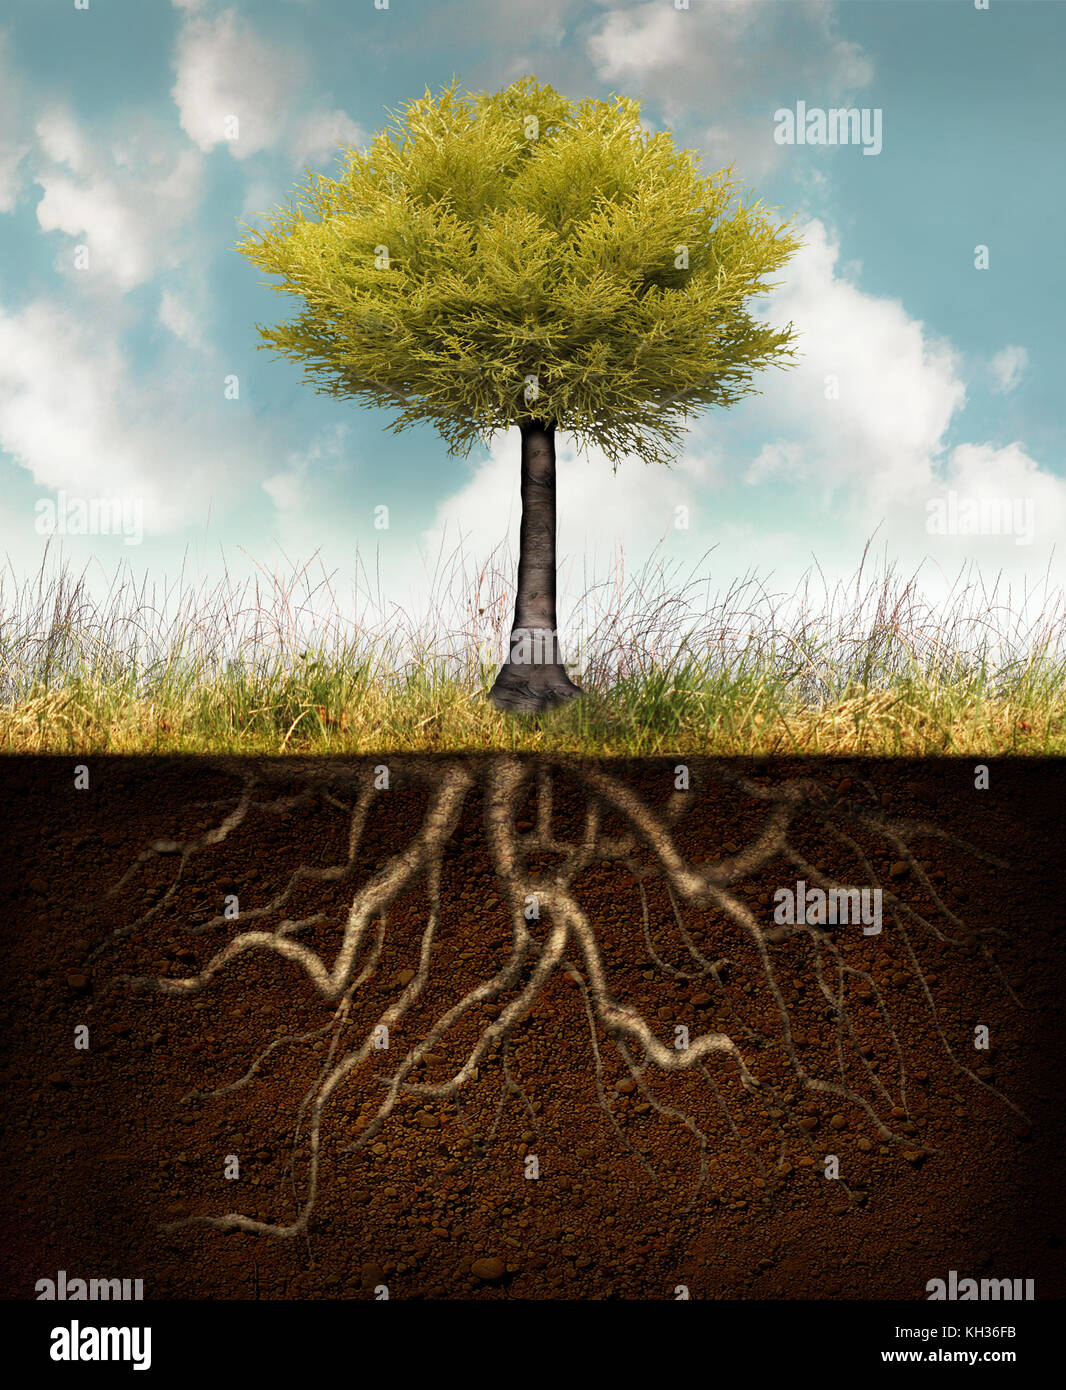 Conceptual image représentant un arbre enraciné au-dessus de l'herbe avec racines underground Banque D'Images